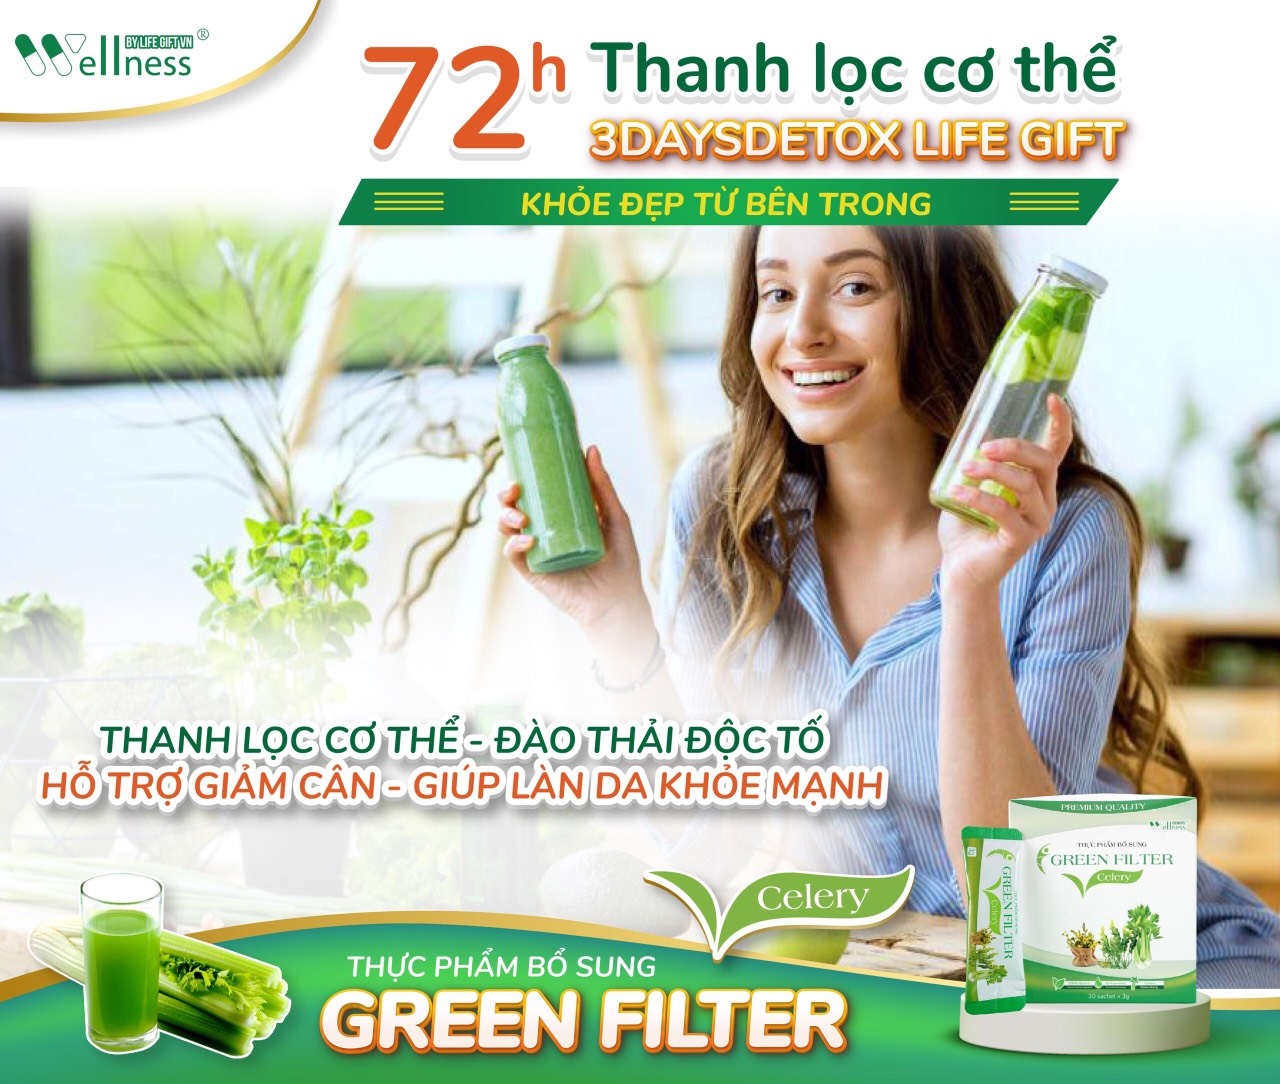 72 giờ thanh lọc cơ thể cùng Thực Phẩm Bổ Sung Bột Cần Tây Sấy Lạnh Diệp Lục Green Filter Celery